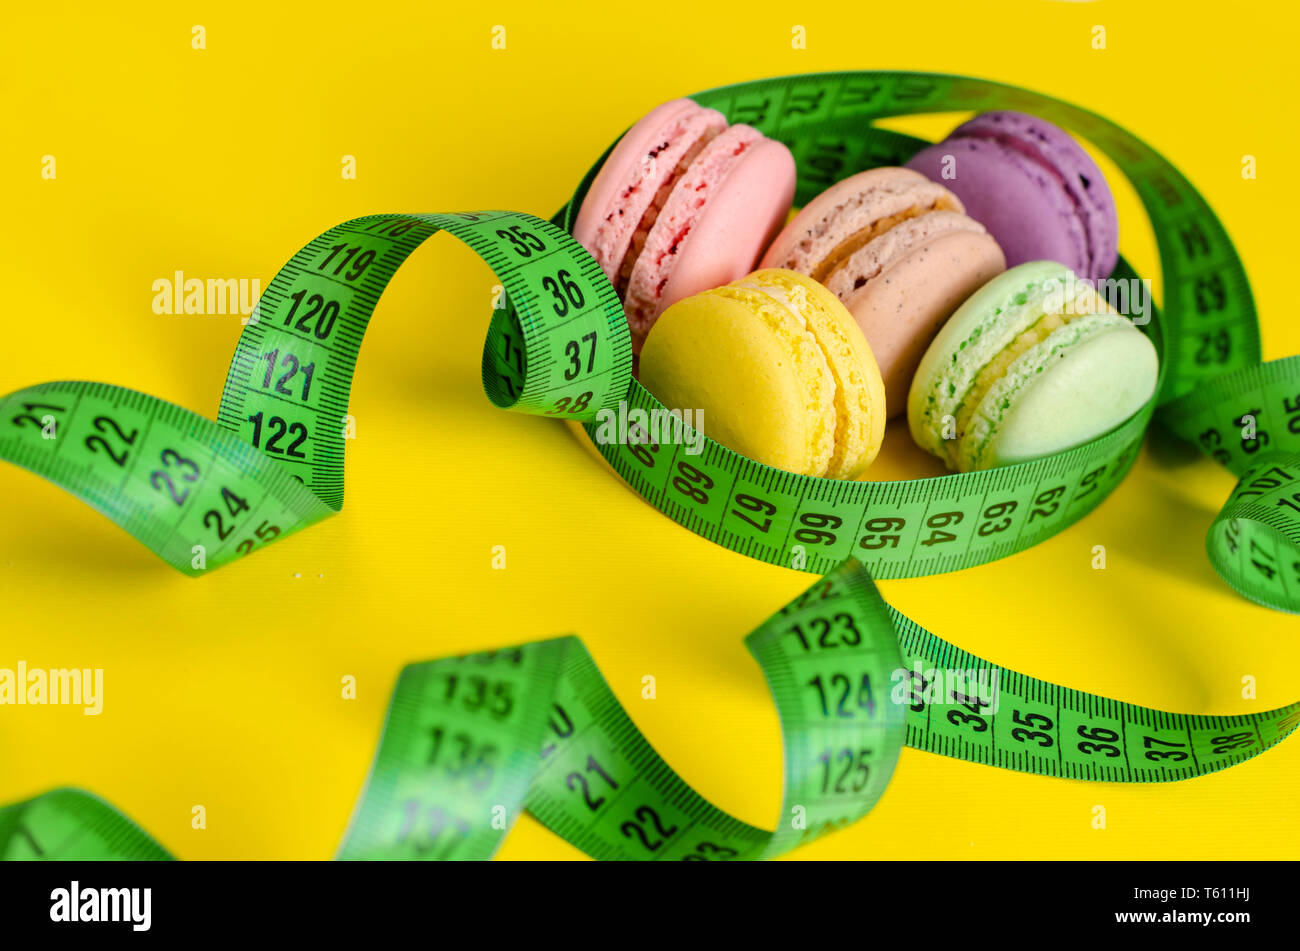 Mètre à ruban vert et macarons ou macarons sur fond jaune. La perte de poids et le traitement minceur concept. Vue d'en haut Banque D'Images